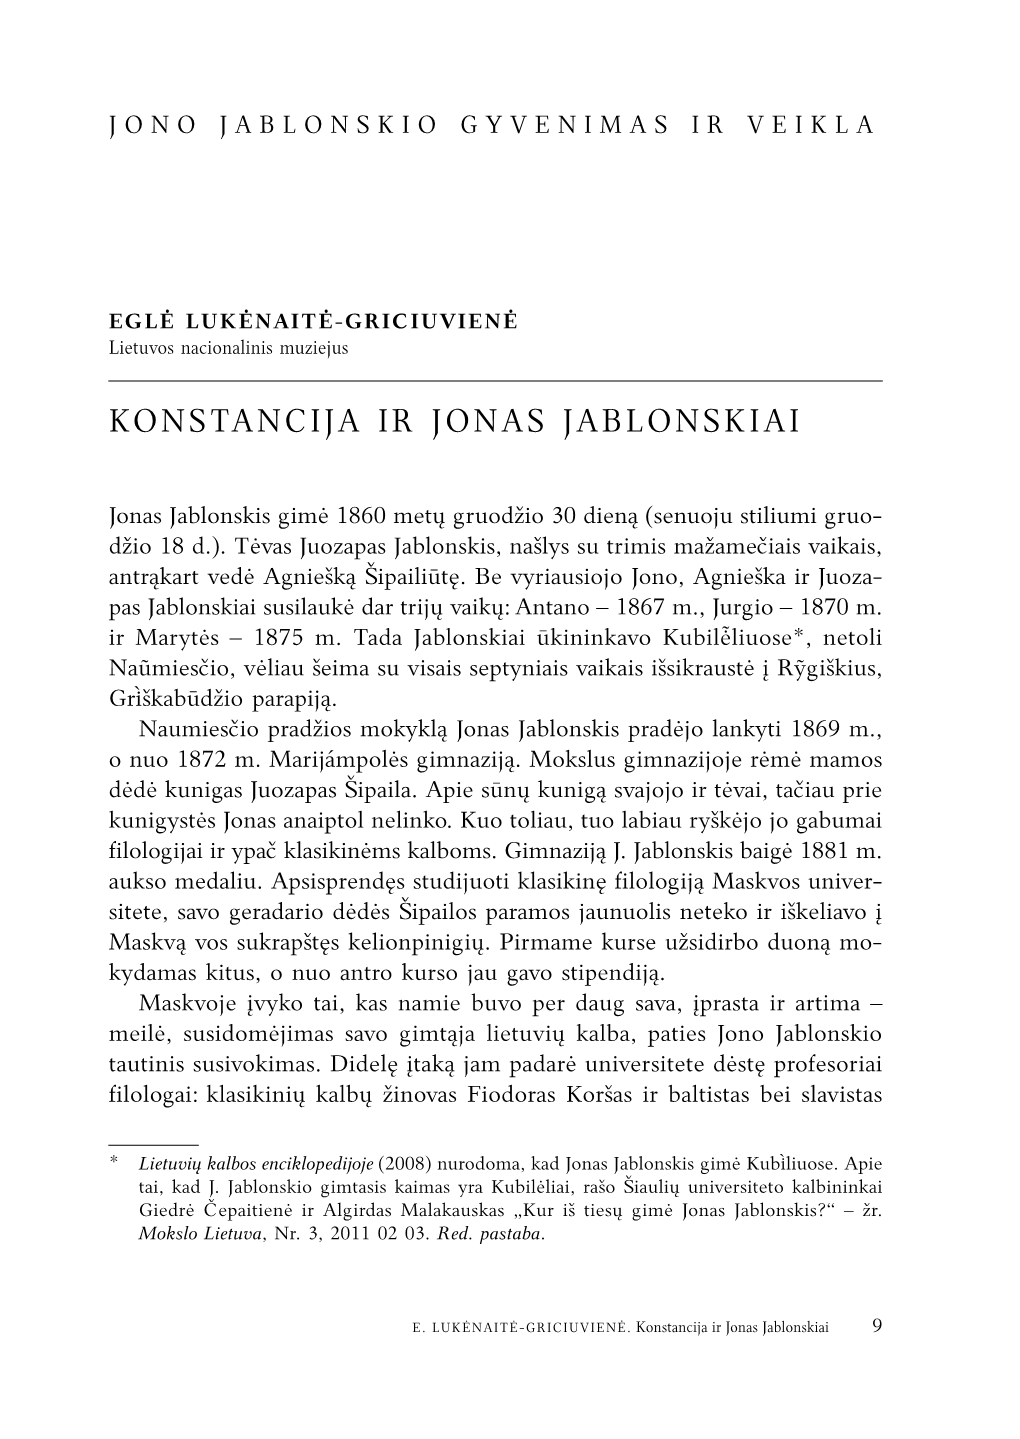 Konstancija Ir Jonas Jablonskiai